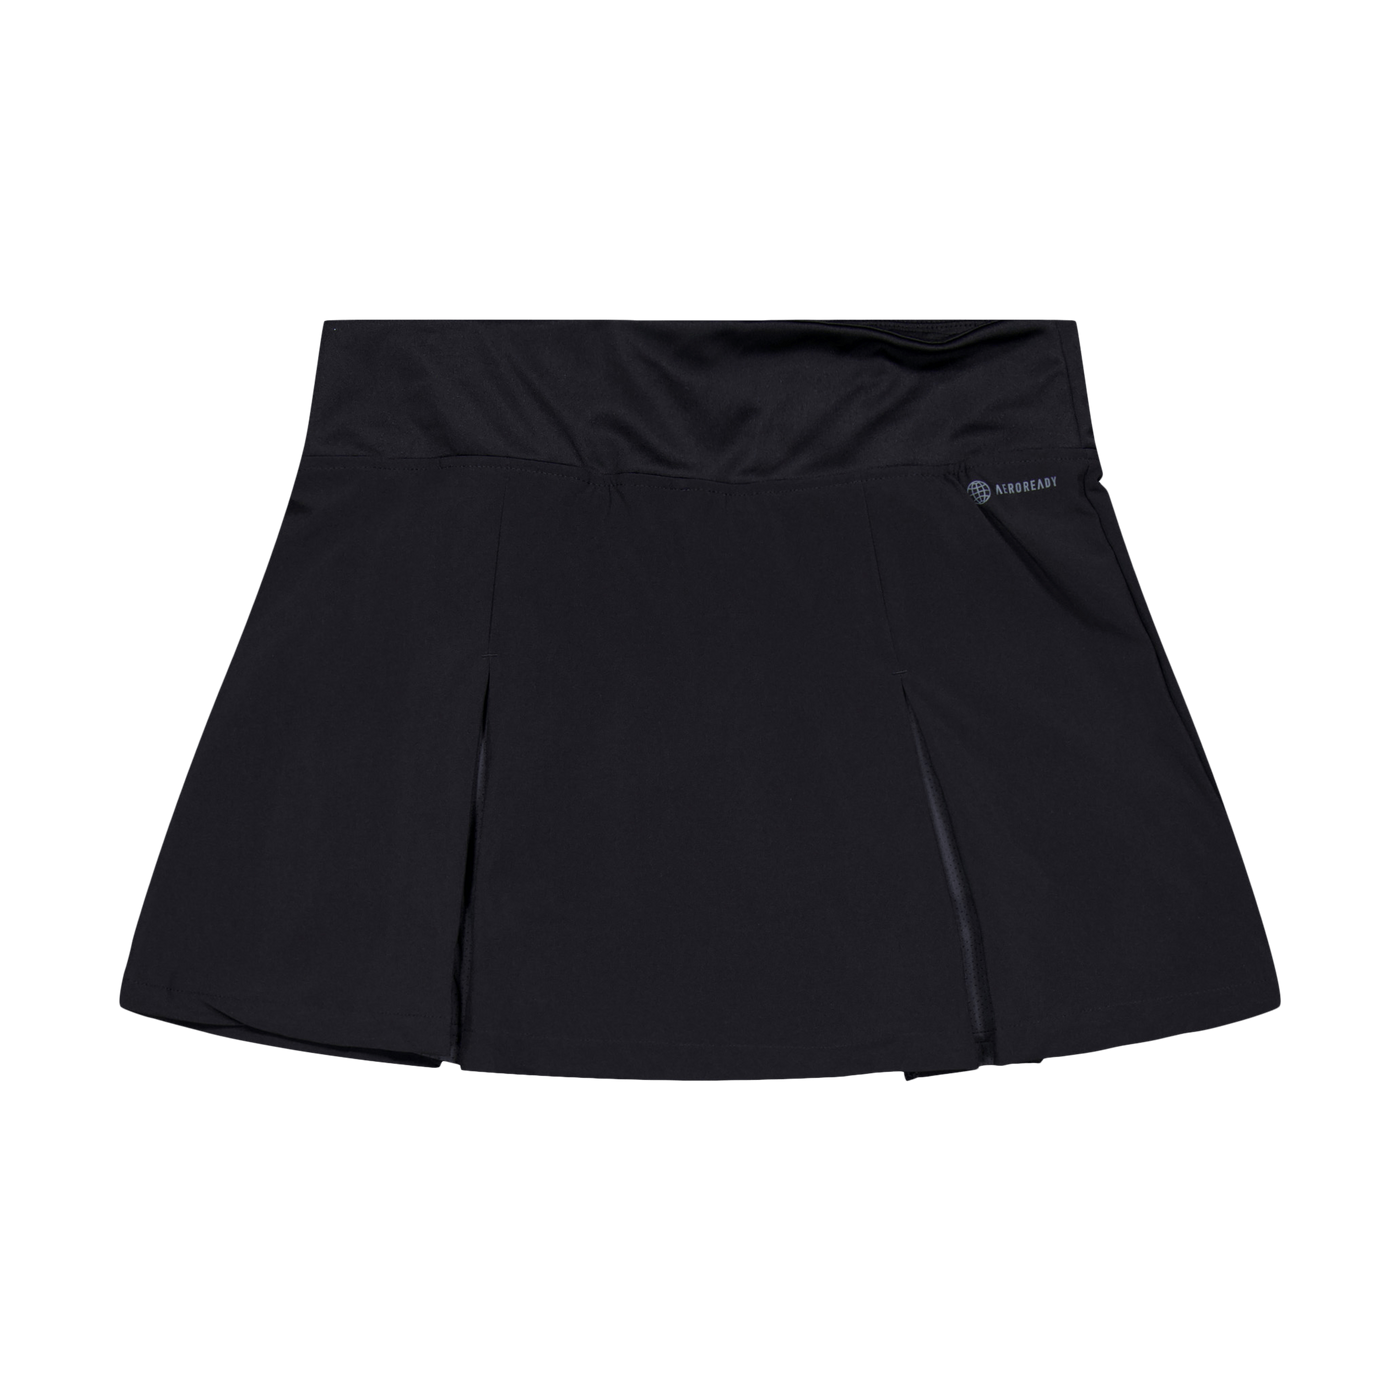 Club Pleated Skirt Black